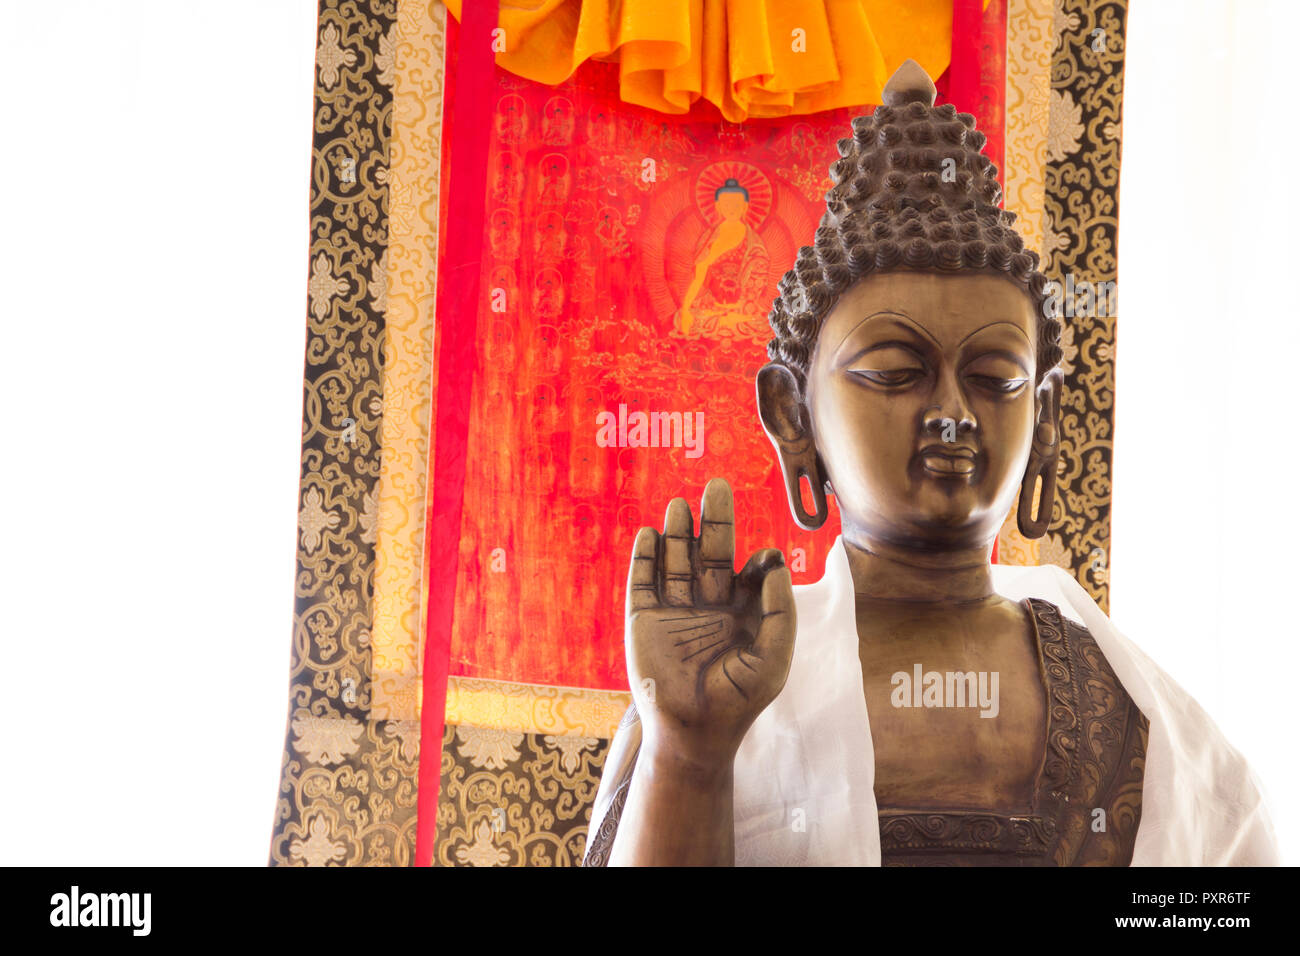 Buddha statue, hand, mudra Stock Photo